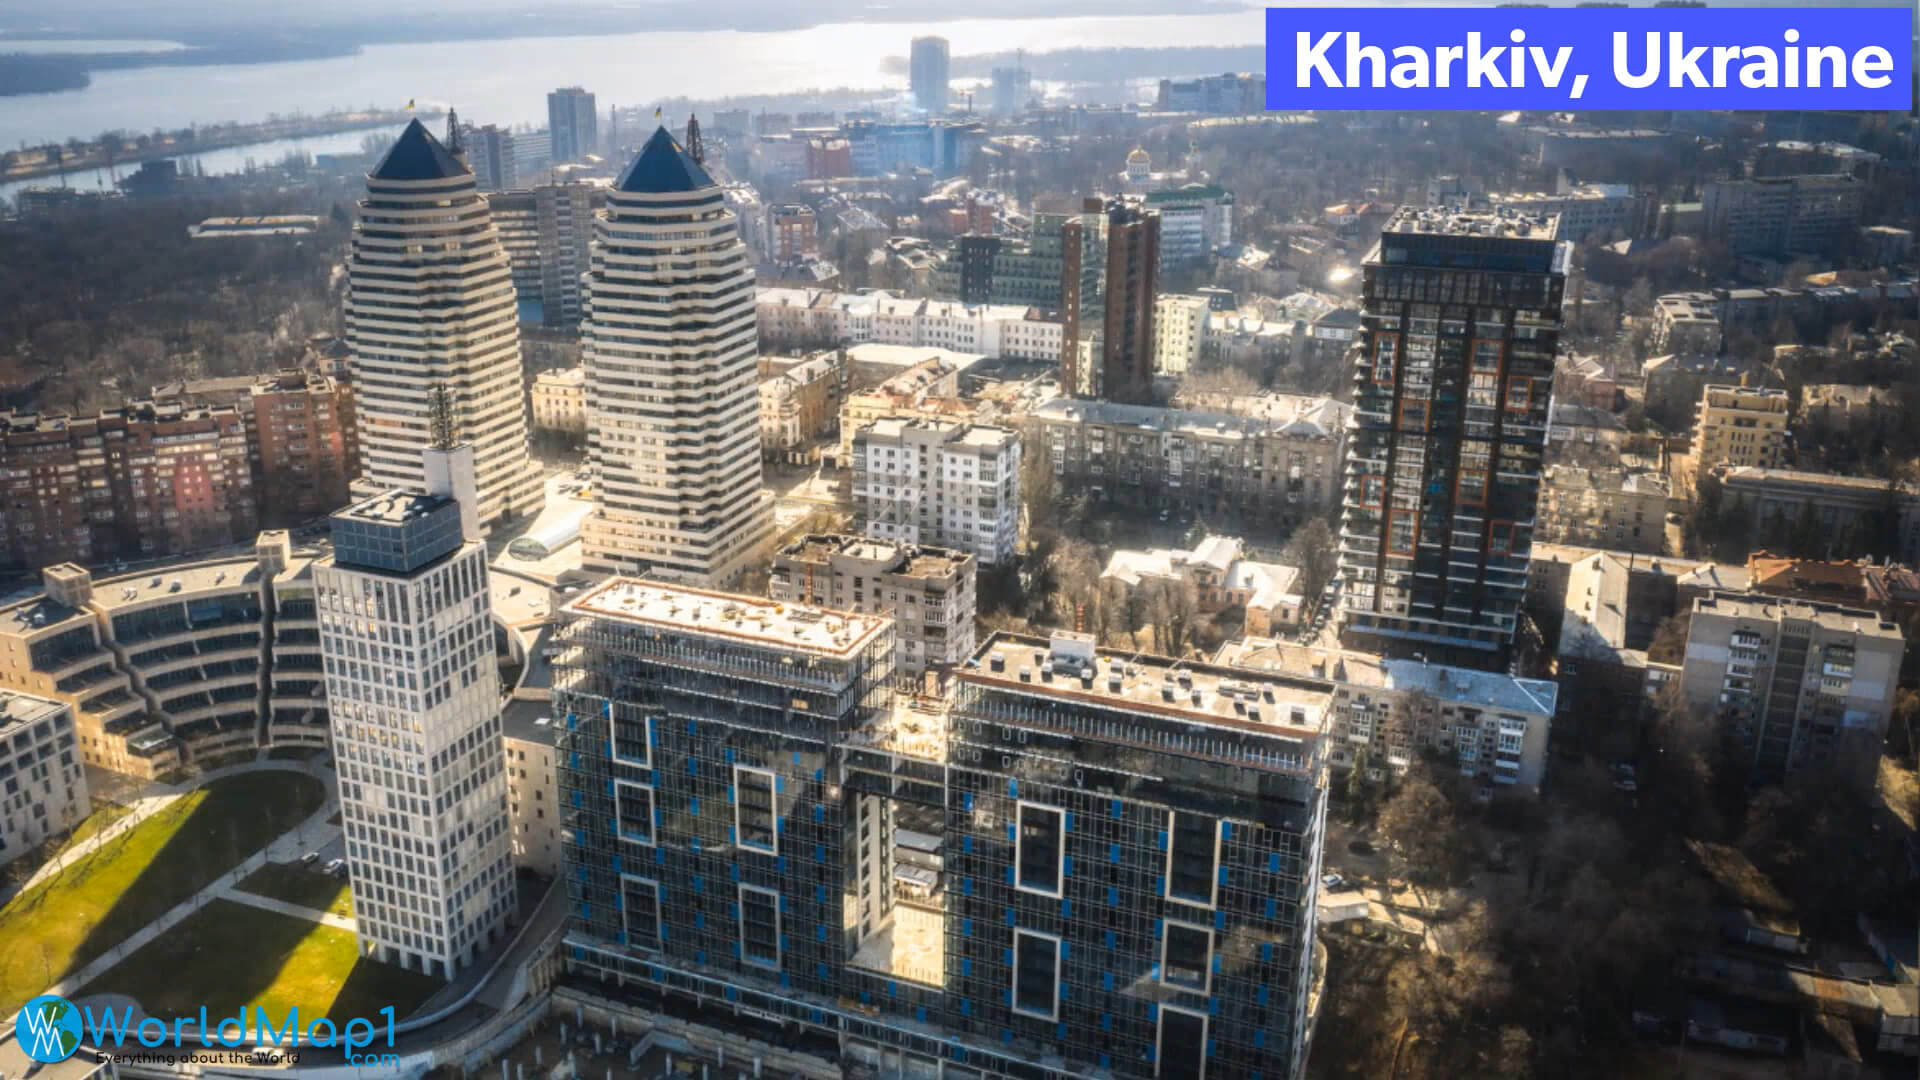 City Center of Kharkiv Ukraine